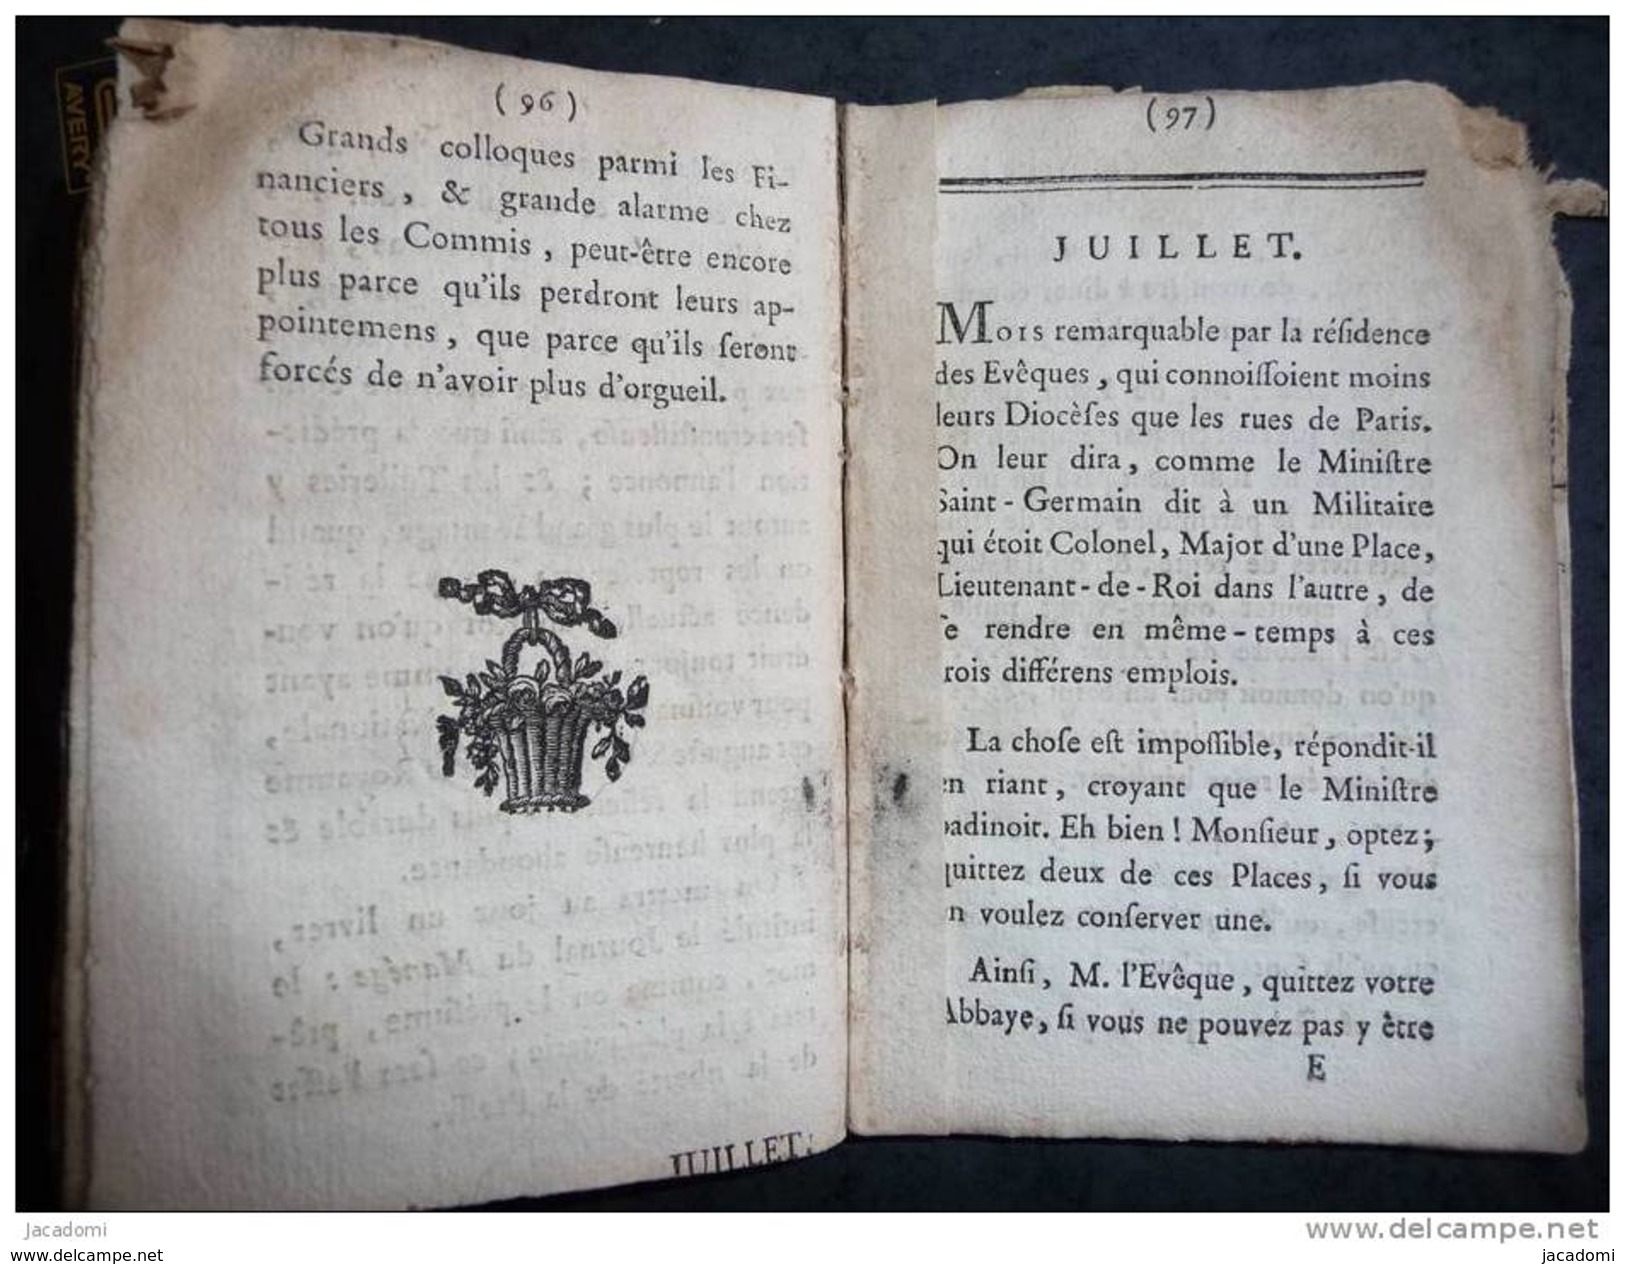 Almanach des douze Ministres, de 1790 (A Paris, rue Saint André-des-Arts, Hôtel Châteauvieux, 9 scans) - (501)